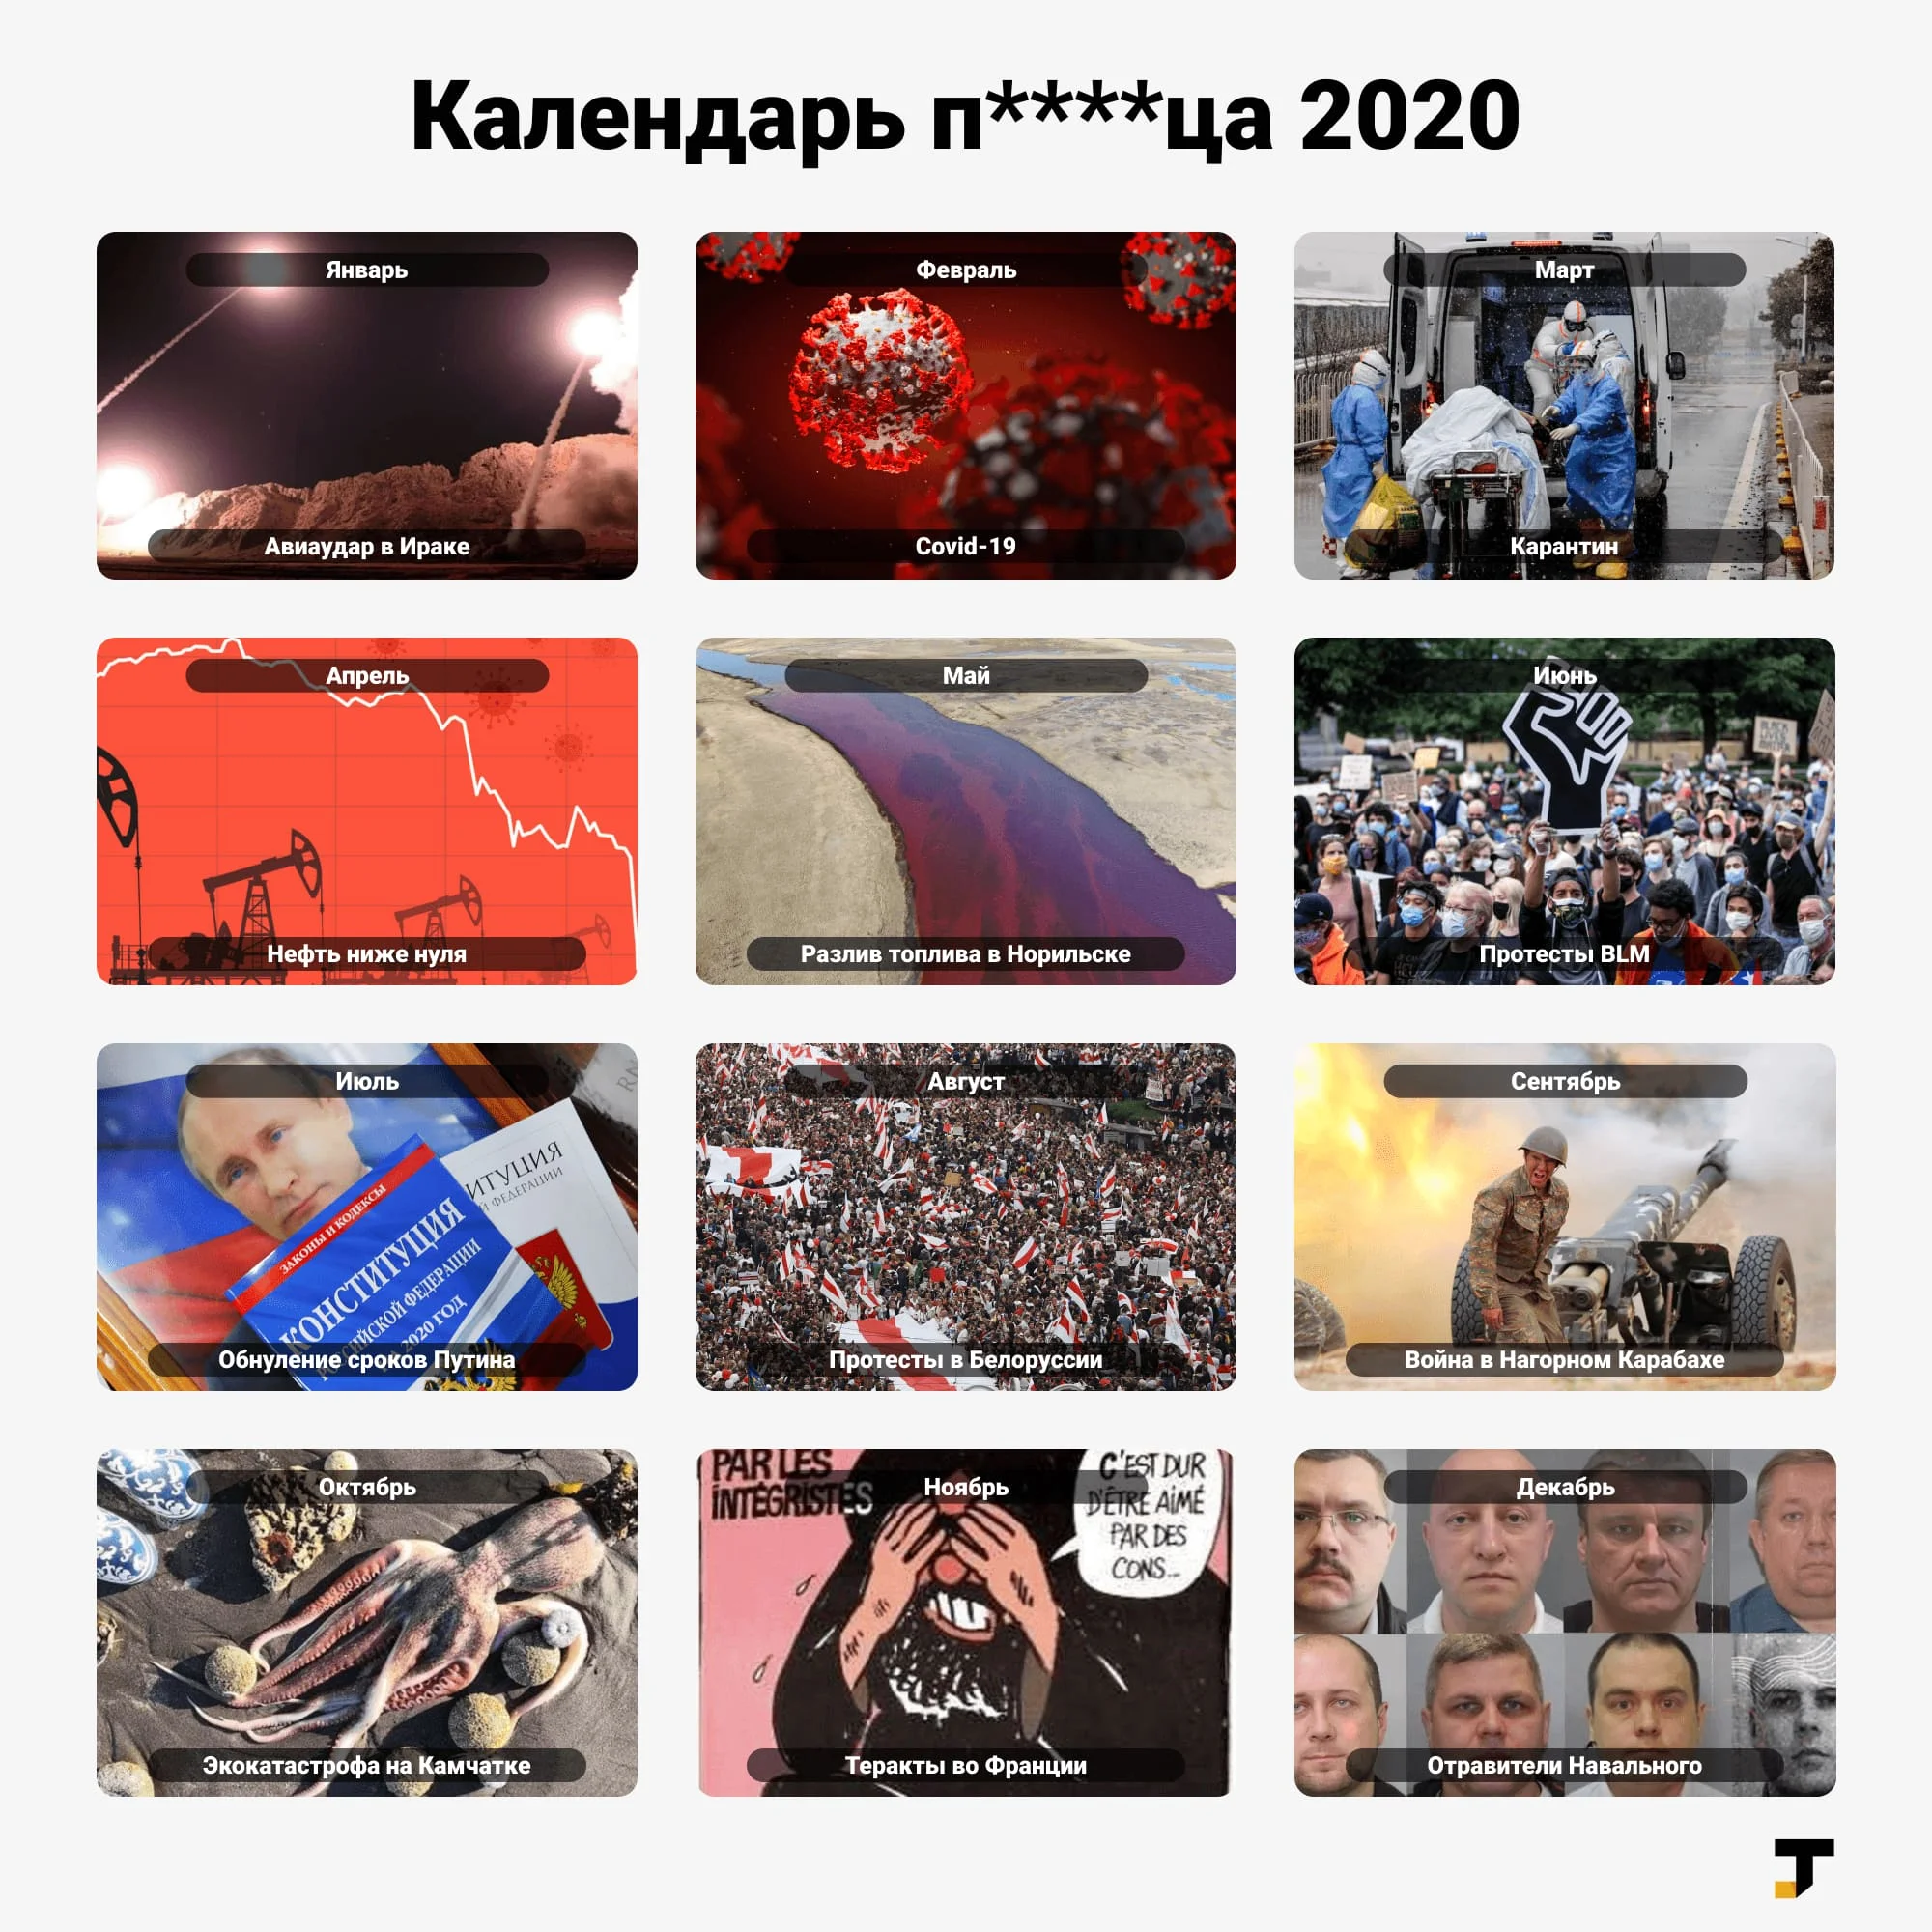 «Календарь п****ца 2020»: главные события каждого месяца в одной картинке - изображение обложка